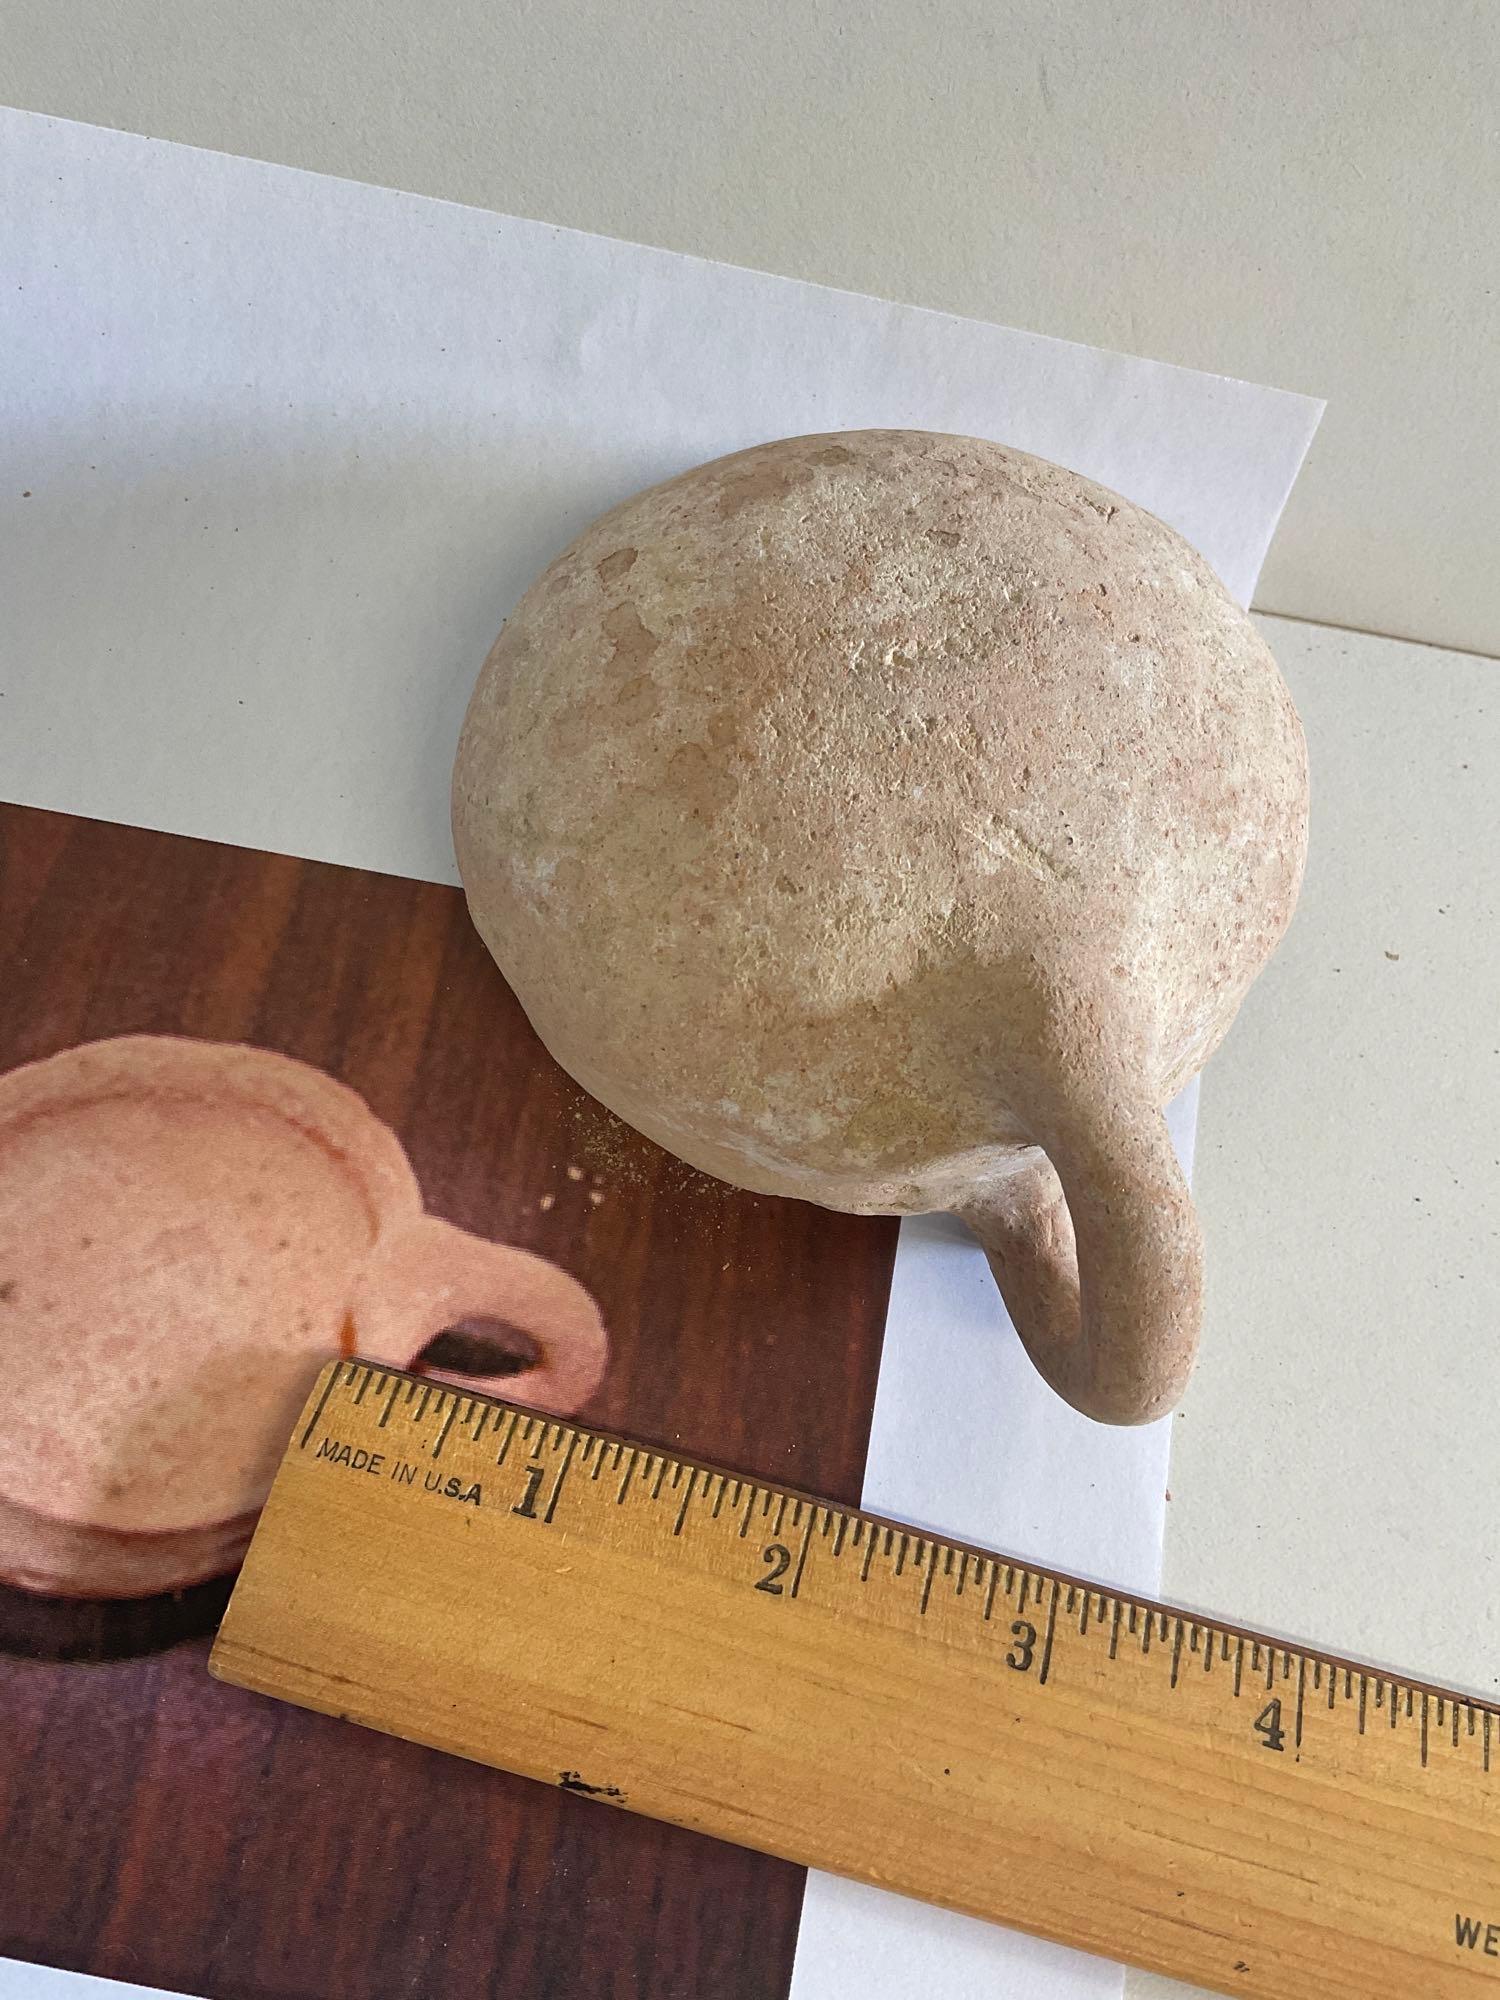 Antique -Palestine measuring pottery bowls- Bronze Age II 2200-1200 BCE. 4 pieces